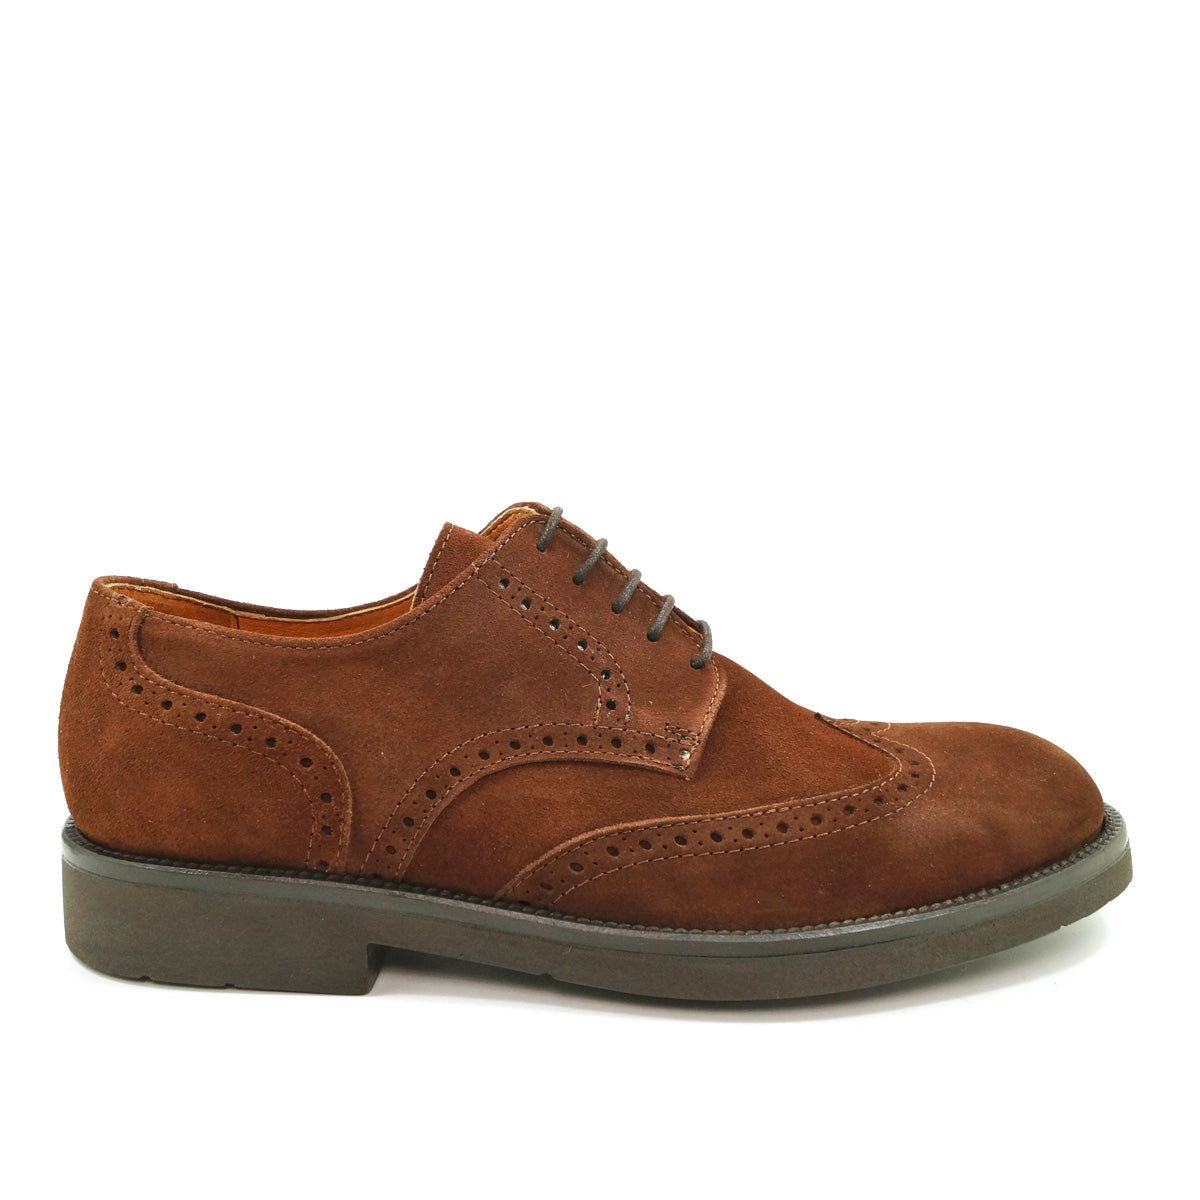 Pielsa Yale - Zapatos brogue en ante marrón